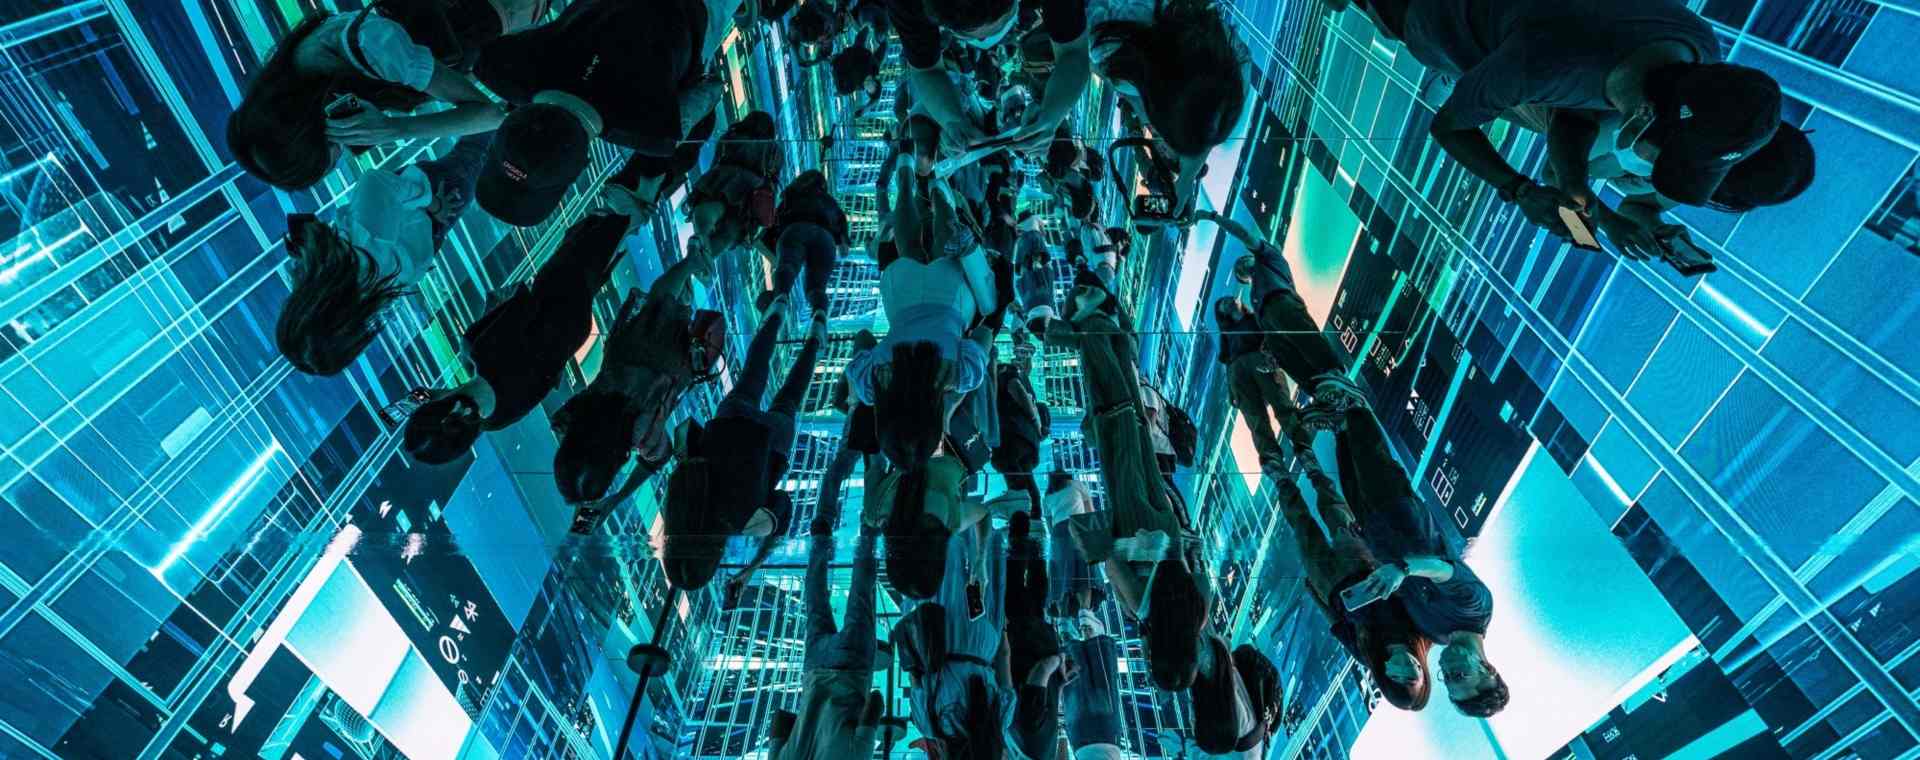 Refleksi pengunjung yang melihat instalasi seni imersif berjudul "Machine Hallucinations - Space: Metaverse" oleh Refik Anadol di Digital Art Fair Asia yang menampilkan seni digital dan NFT di Hong Kong. - Bloomberg/Lam Yik